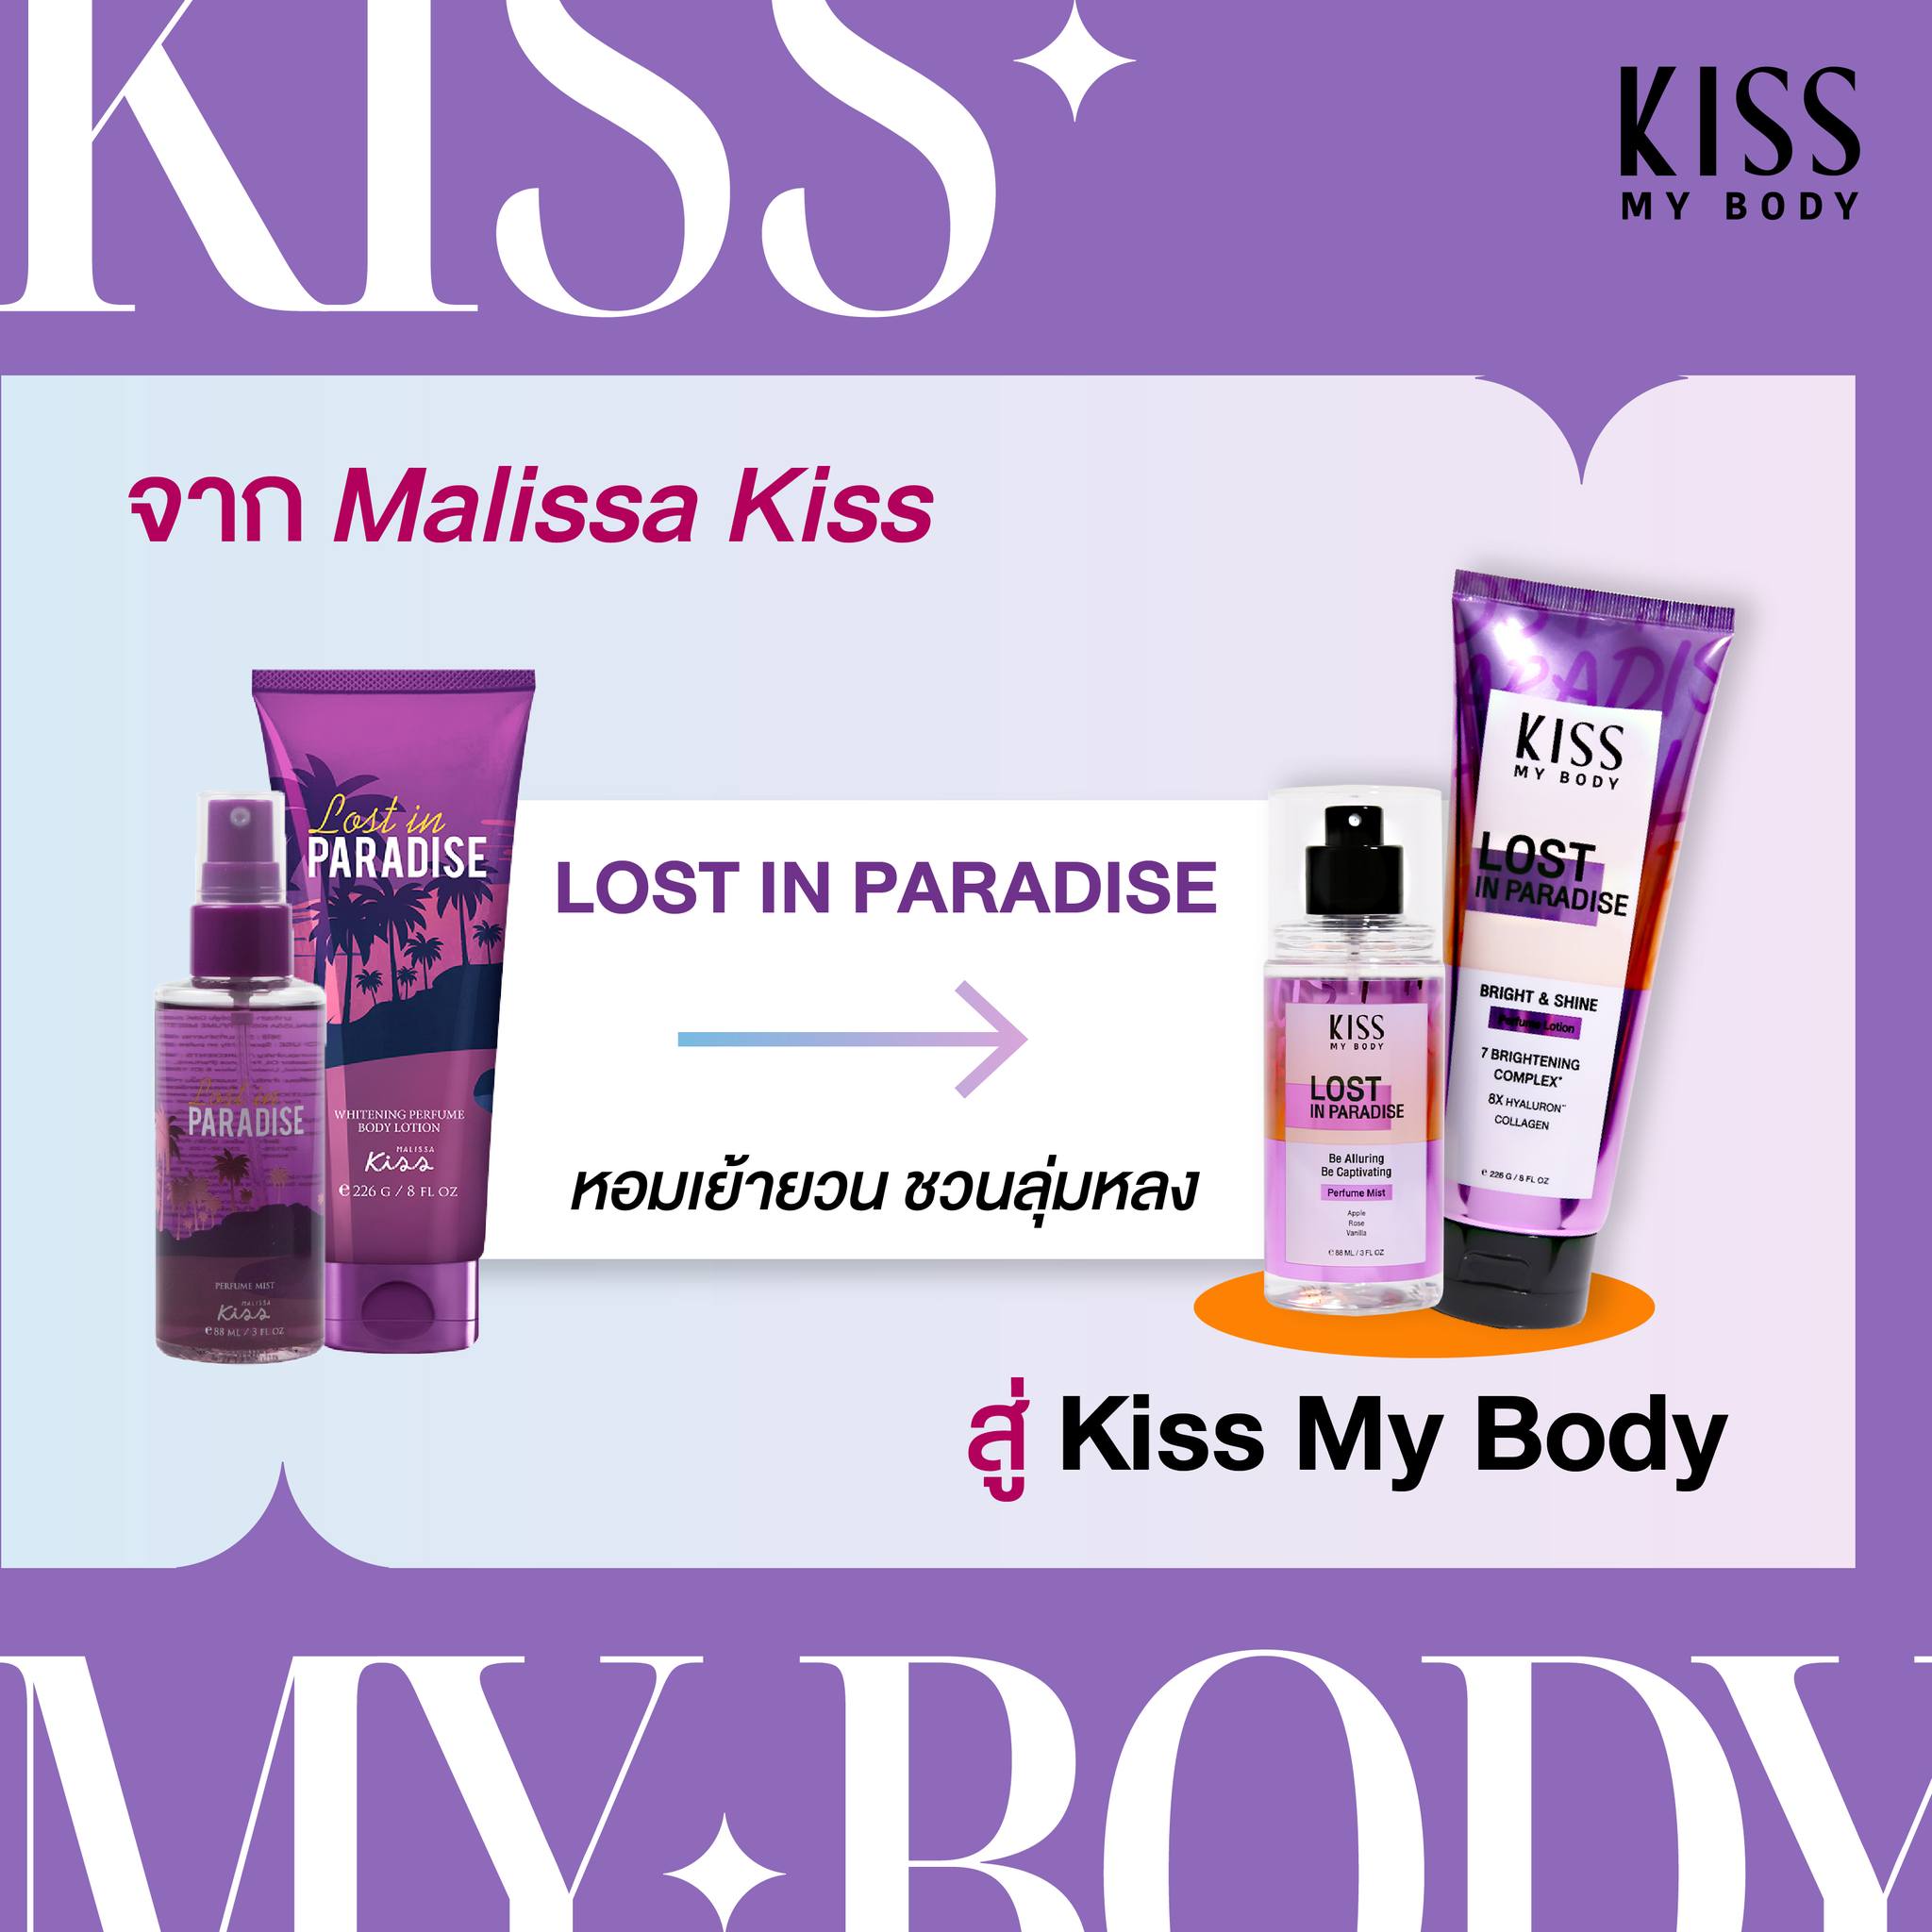 รูปภาพเพิ่มเติมเกี่ยวกับ Kiss My Body คิส มาย บอดี้ Perfume Body Mist สเปรย์น้ำหอม 88 ml. กลิ่น ลอสต์ อิน พาราไดซ์ (Lost in Paradise)